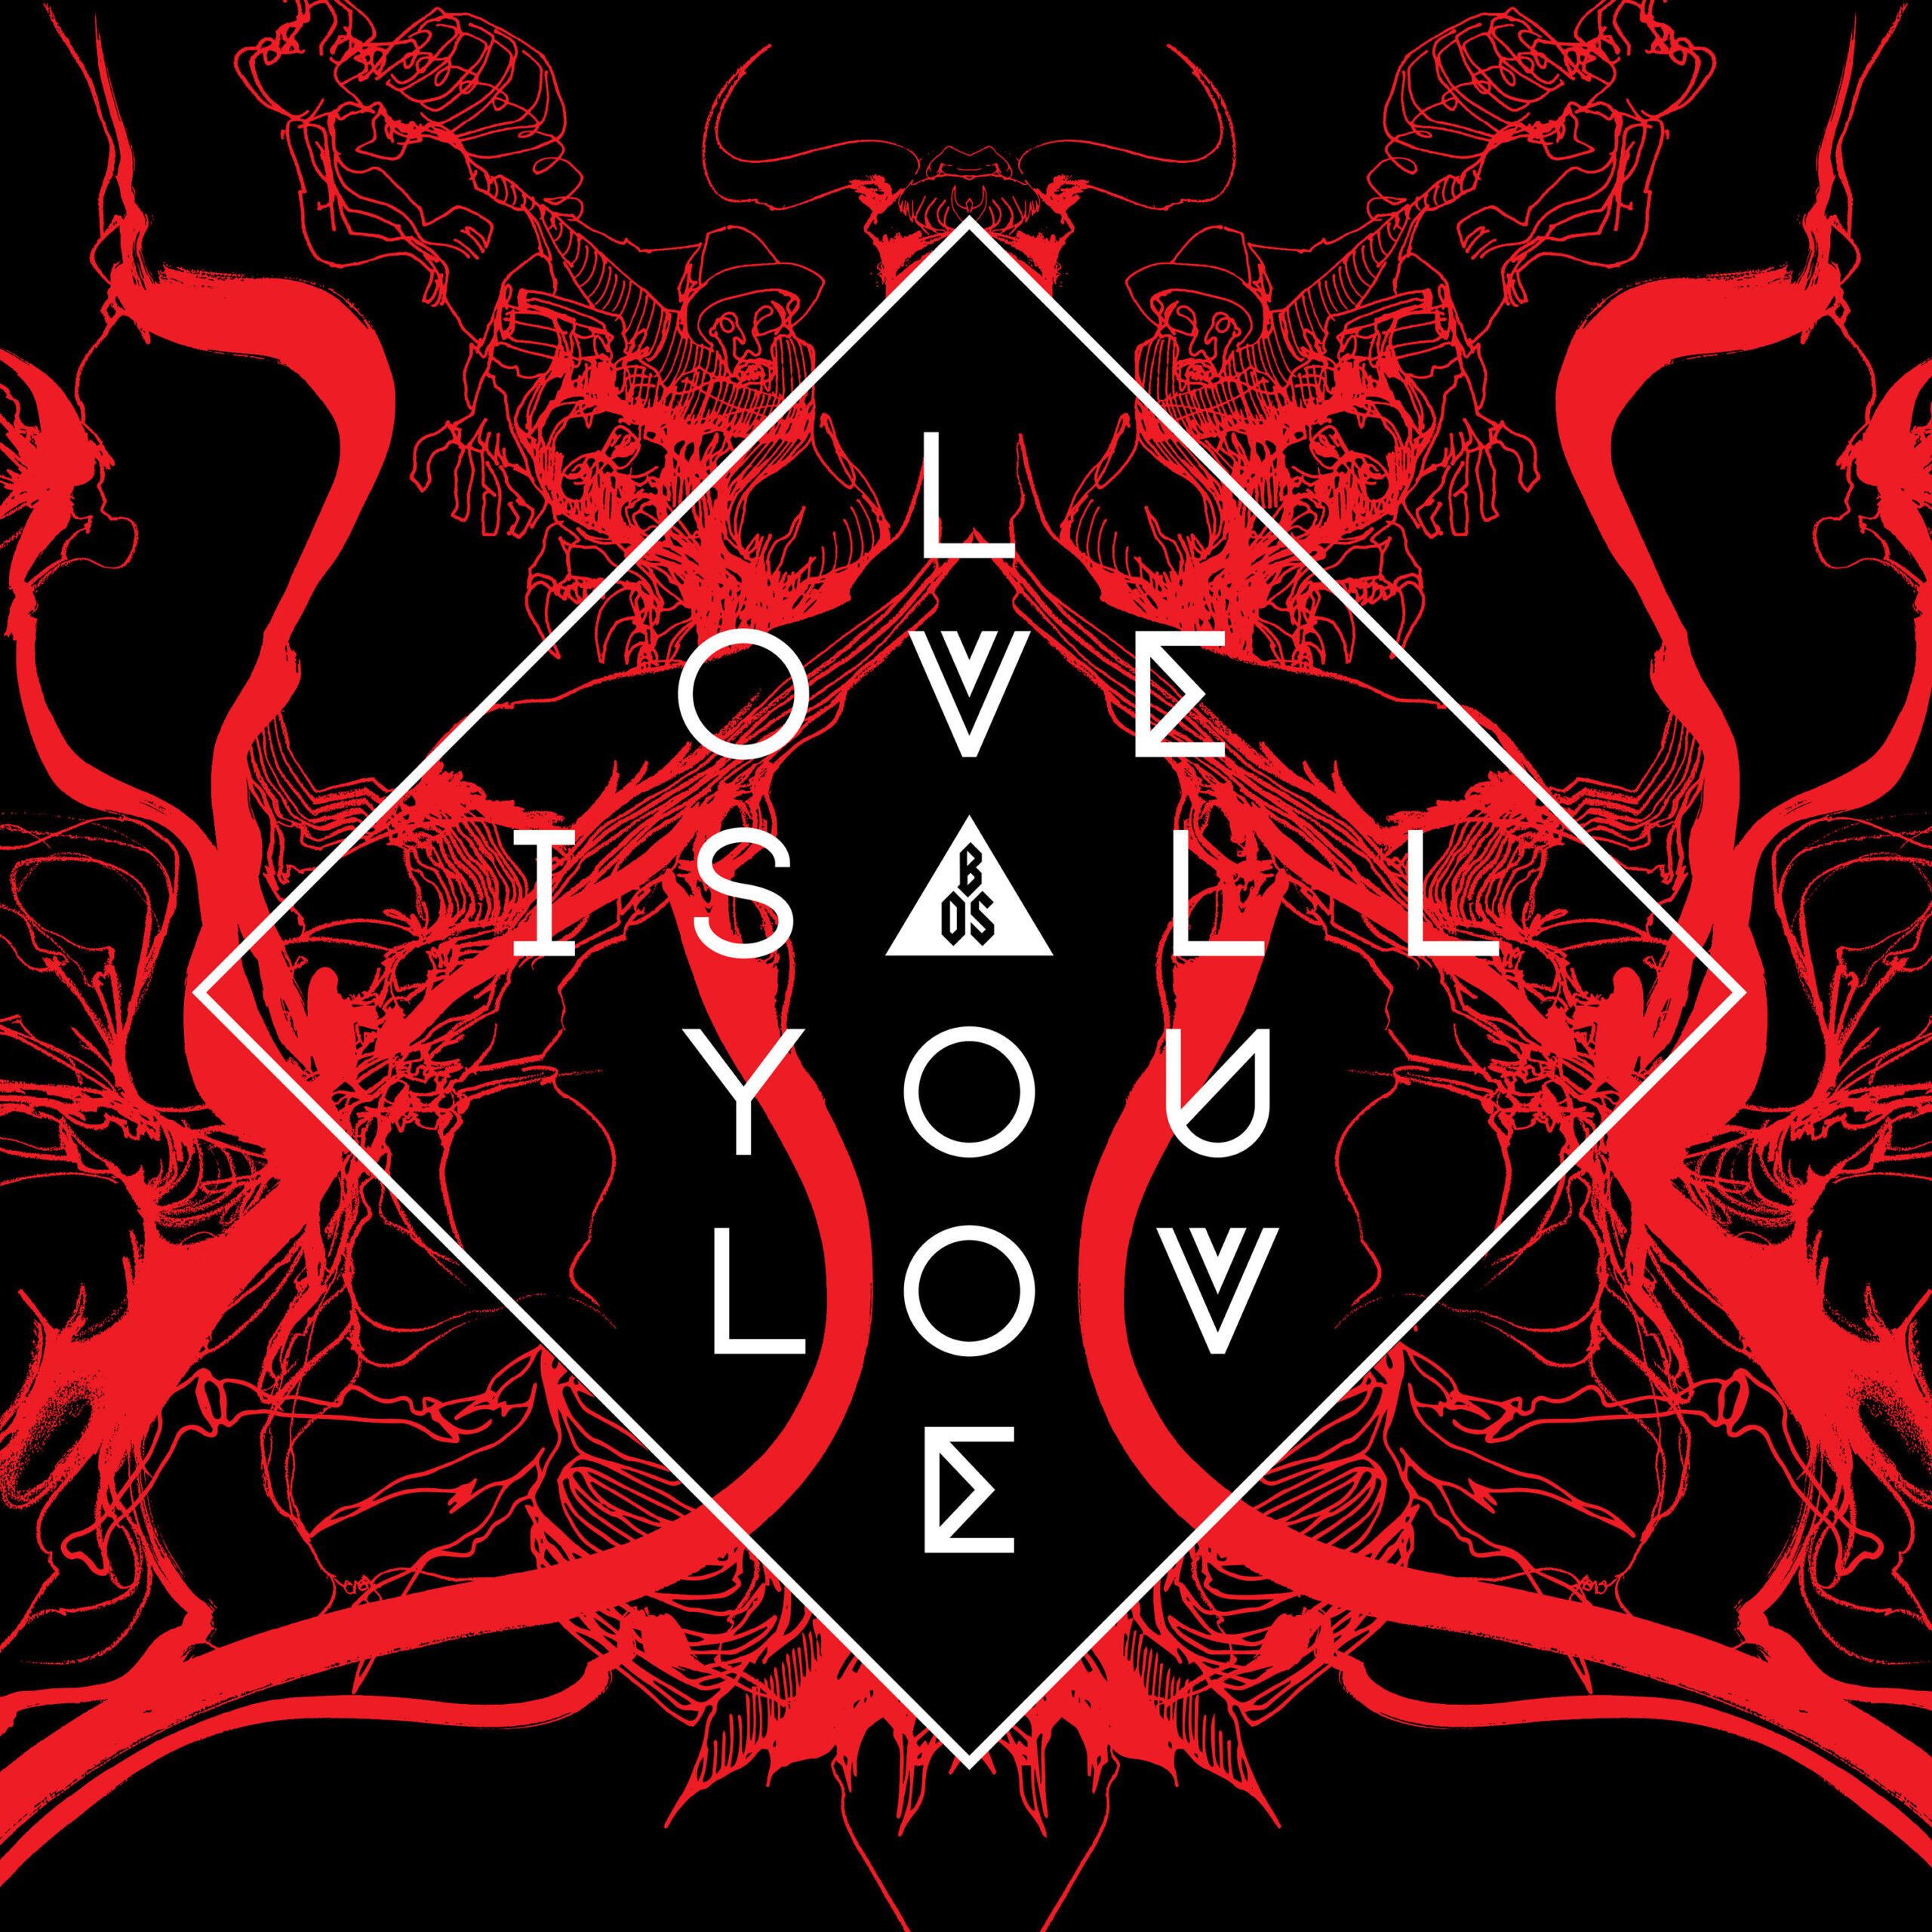 Release-Date des "Love Is All You Love"-Albums auf den 12. April festgelegt